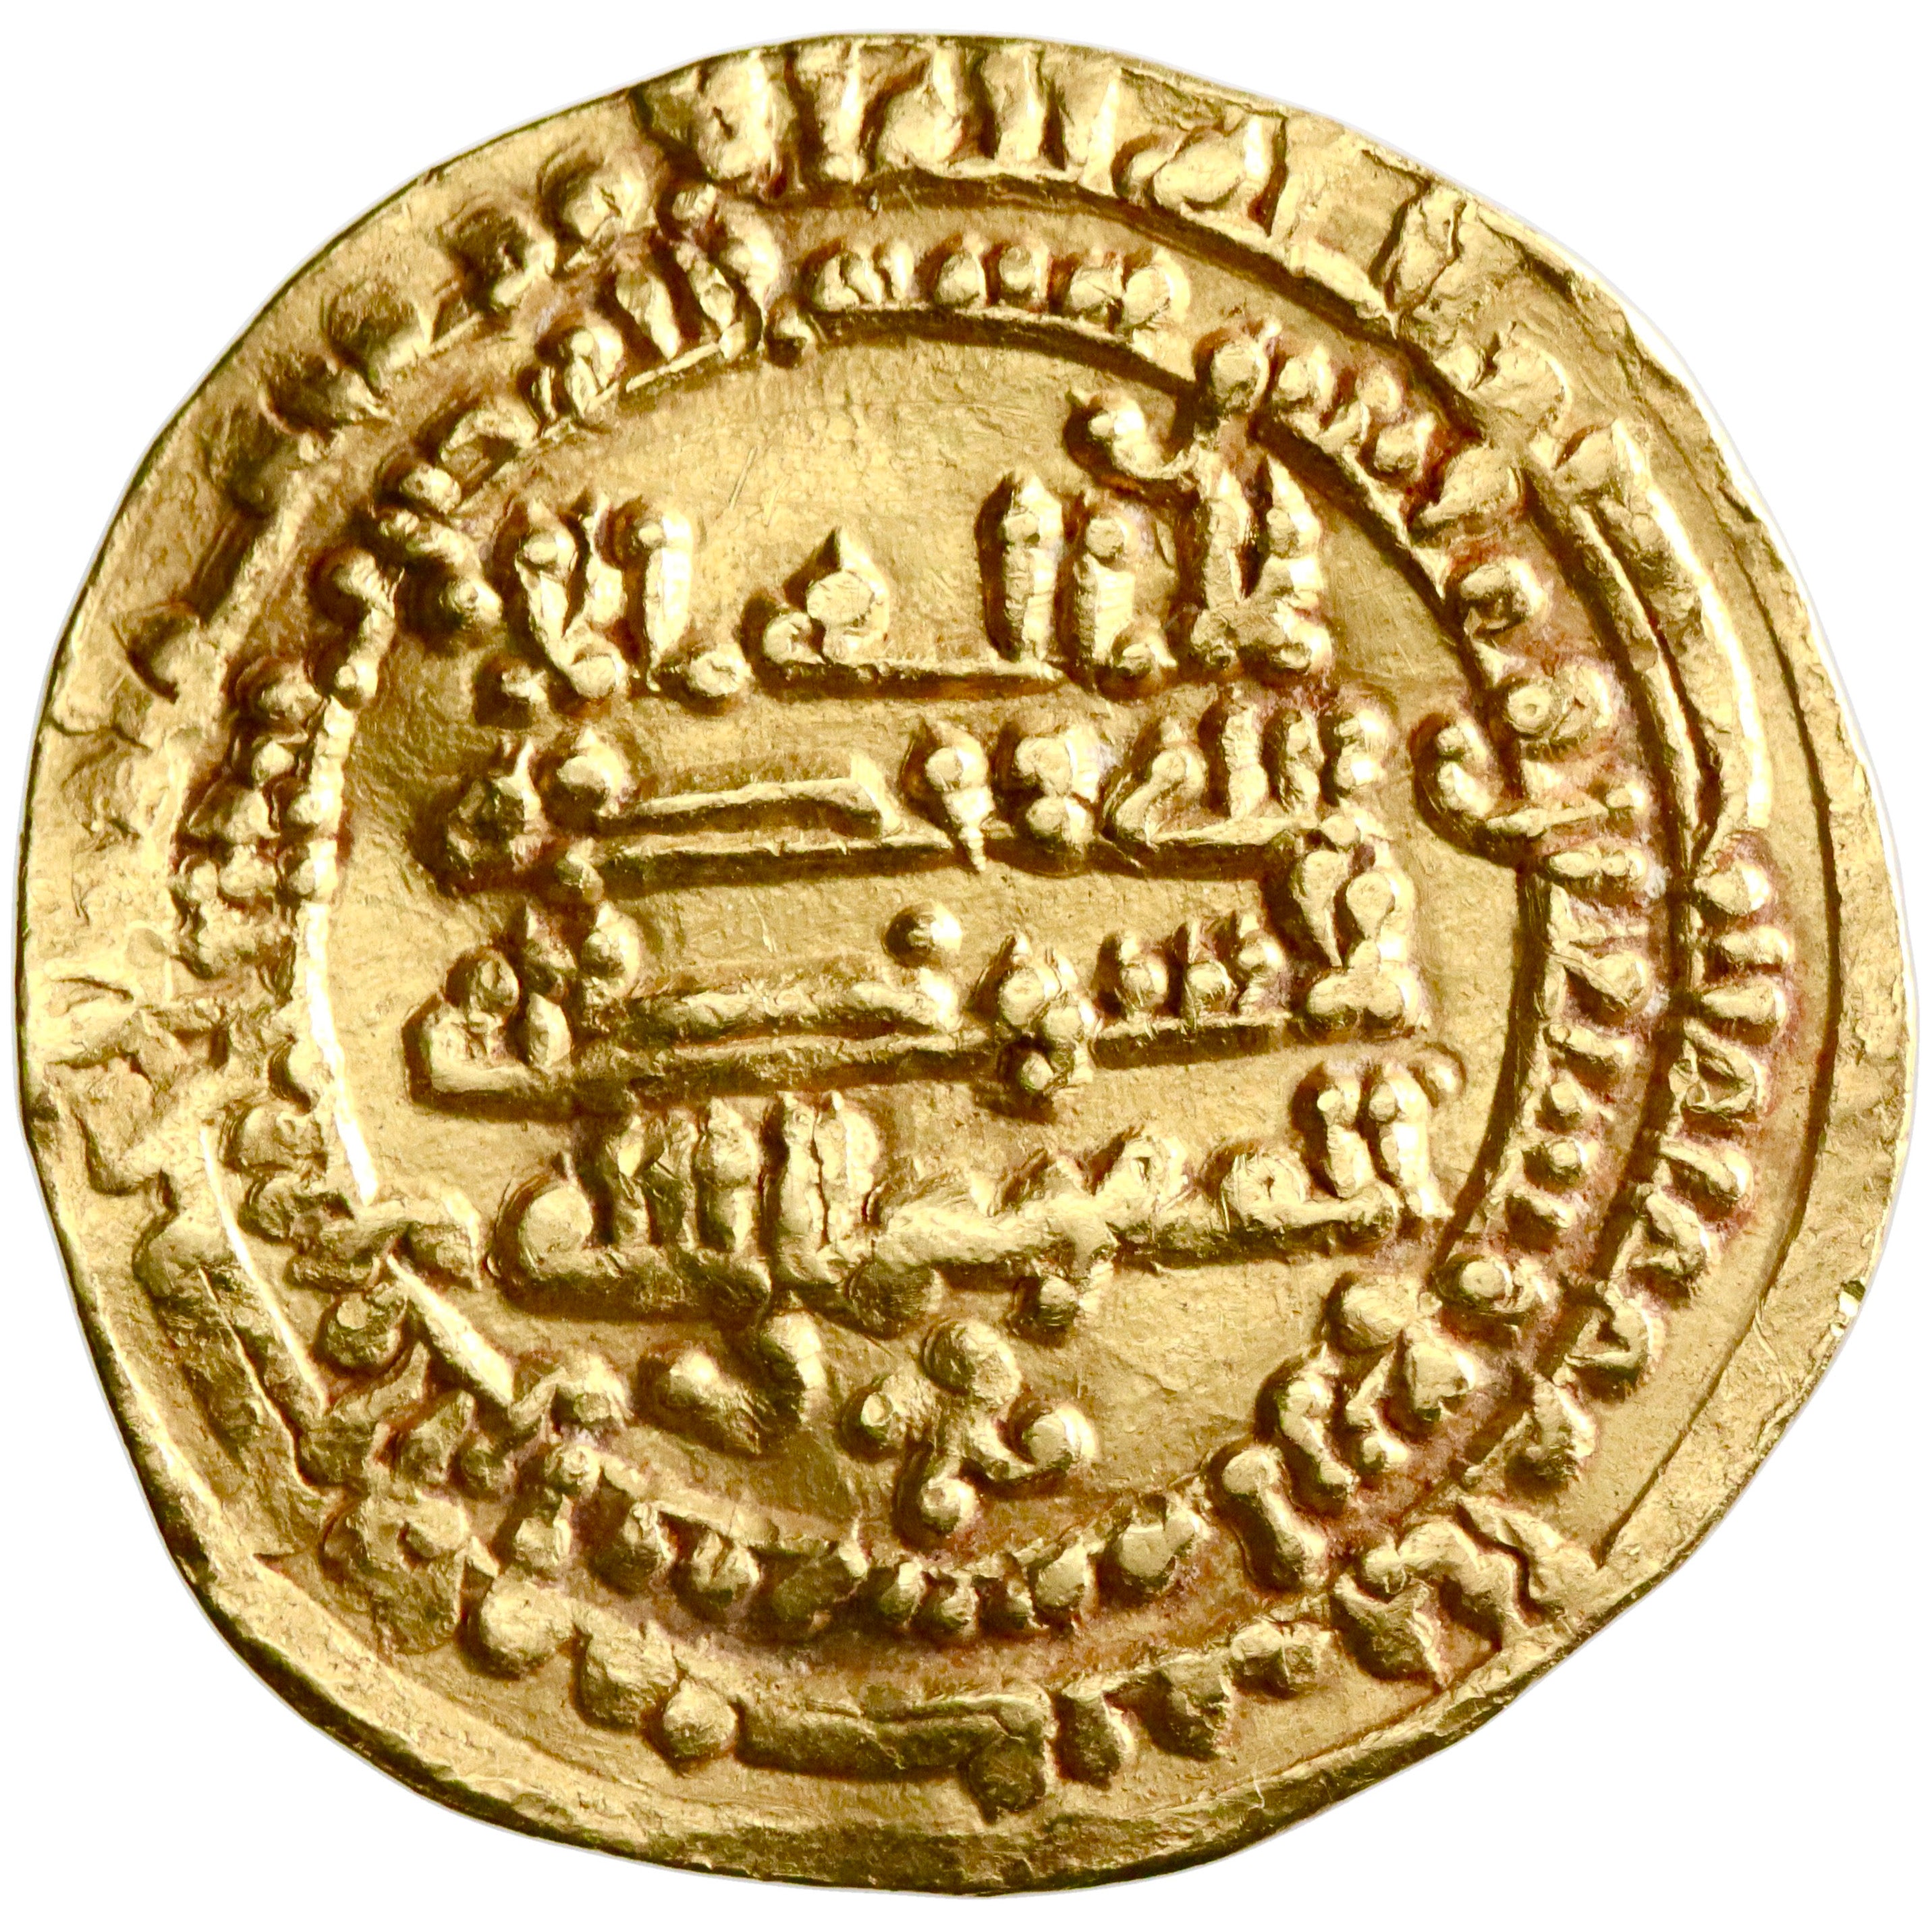 Abbasid, al-Mu'tamid, gold dinar, al-Rafiqa mint, AH 274, swastika, citing al-Mufawwid and Ahmad ibn al-Muwaffaq